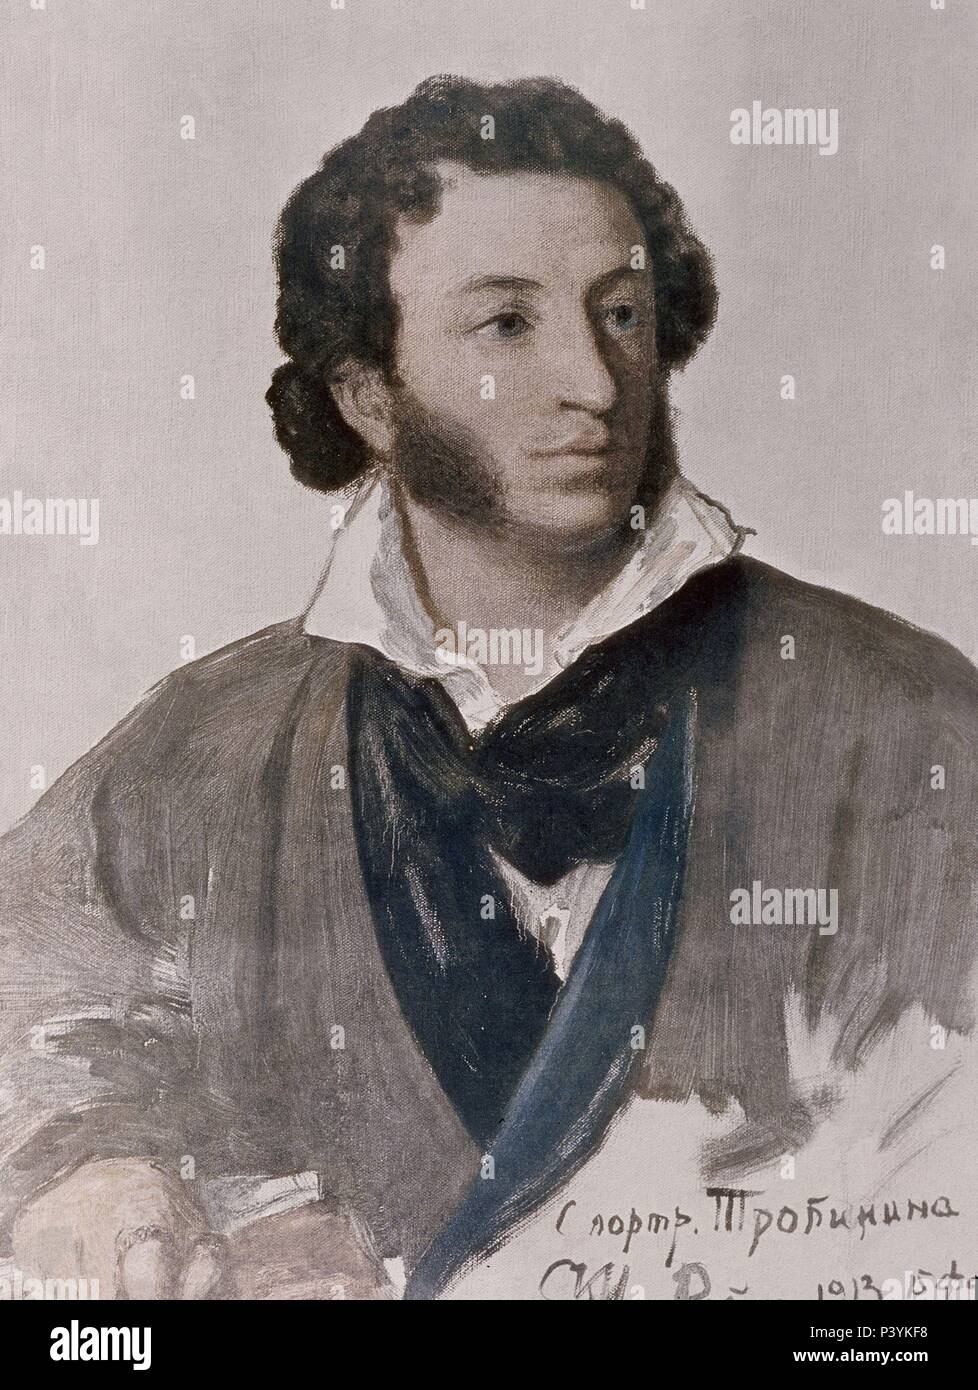 ALEKSANDR PUSHKIN (1799-1837) - POETA DRAMATURGO Y NOVELISTA RUSO - 1827. Author: Vasilij Tropinin (1776-1857). Location: B GOGOL, ROME, ITALIA. Stock Photo